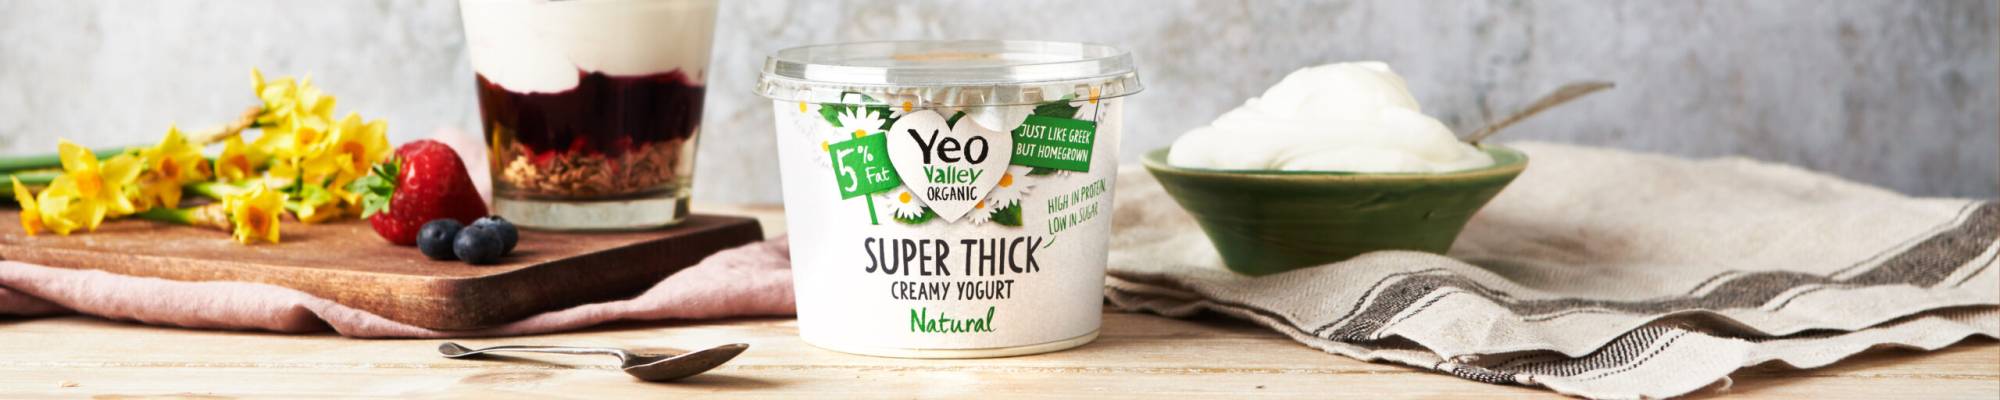 Yeo Valley Organic Super Thick yogurt